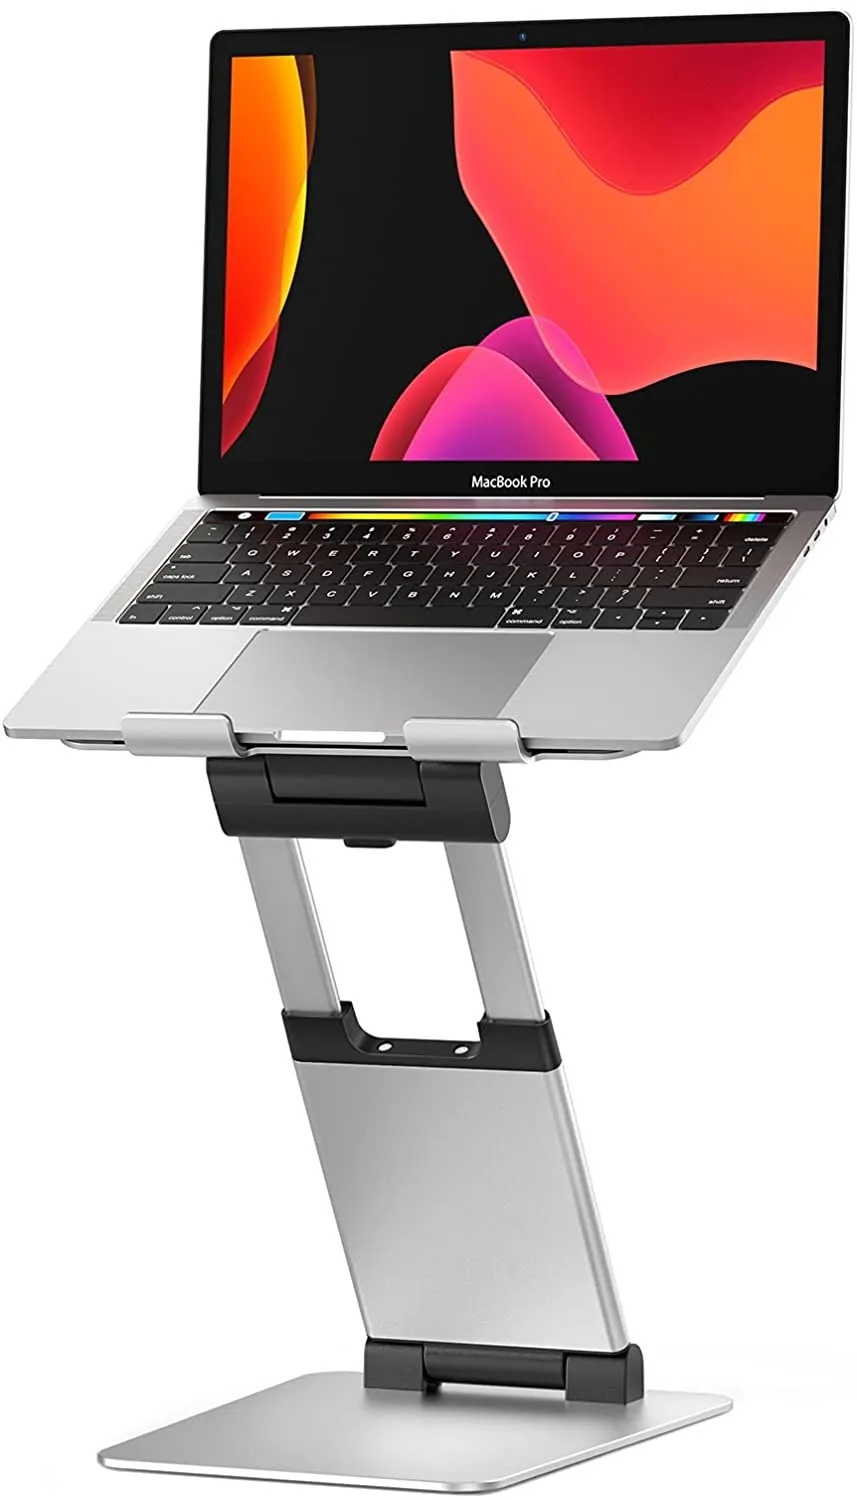 Support pour ordinateur portable pour bureau, support ergonomique pour ordinateur portable assis à debout avec hauteur réglable jusqu'à 21", support pour ordinateur portable en aluminium ventilé